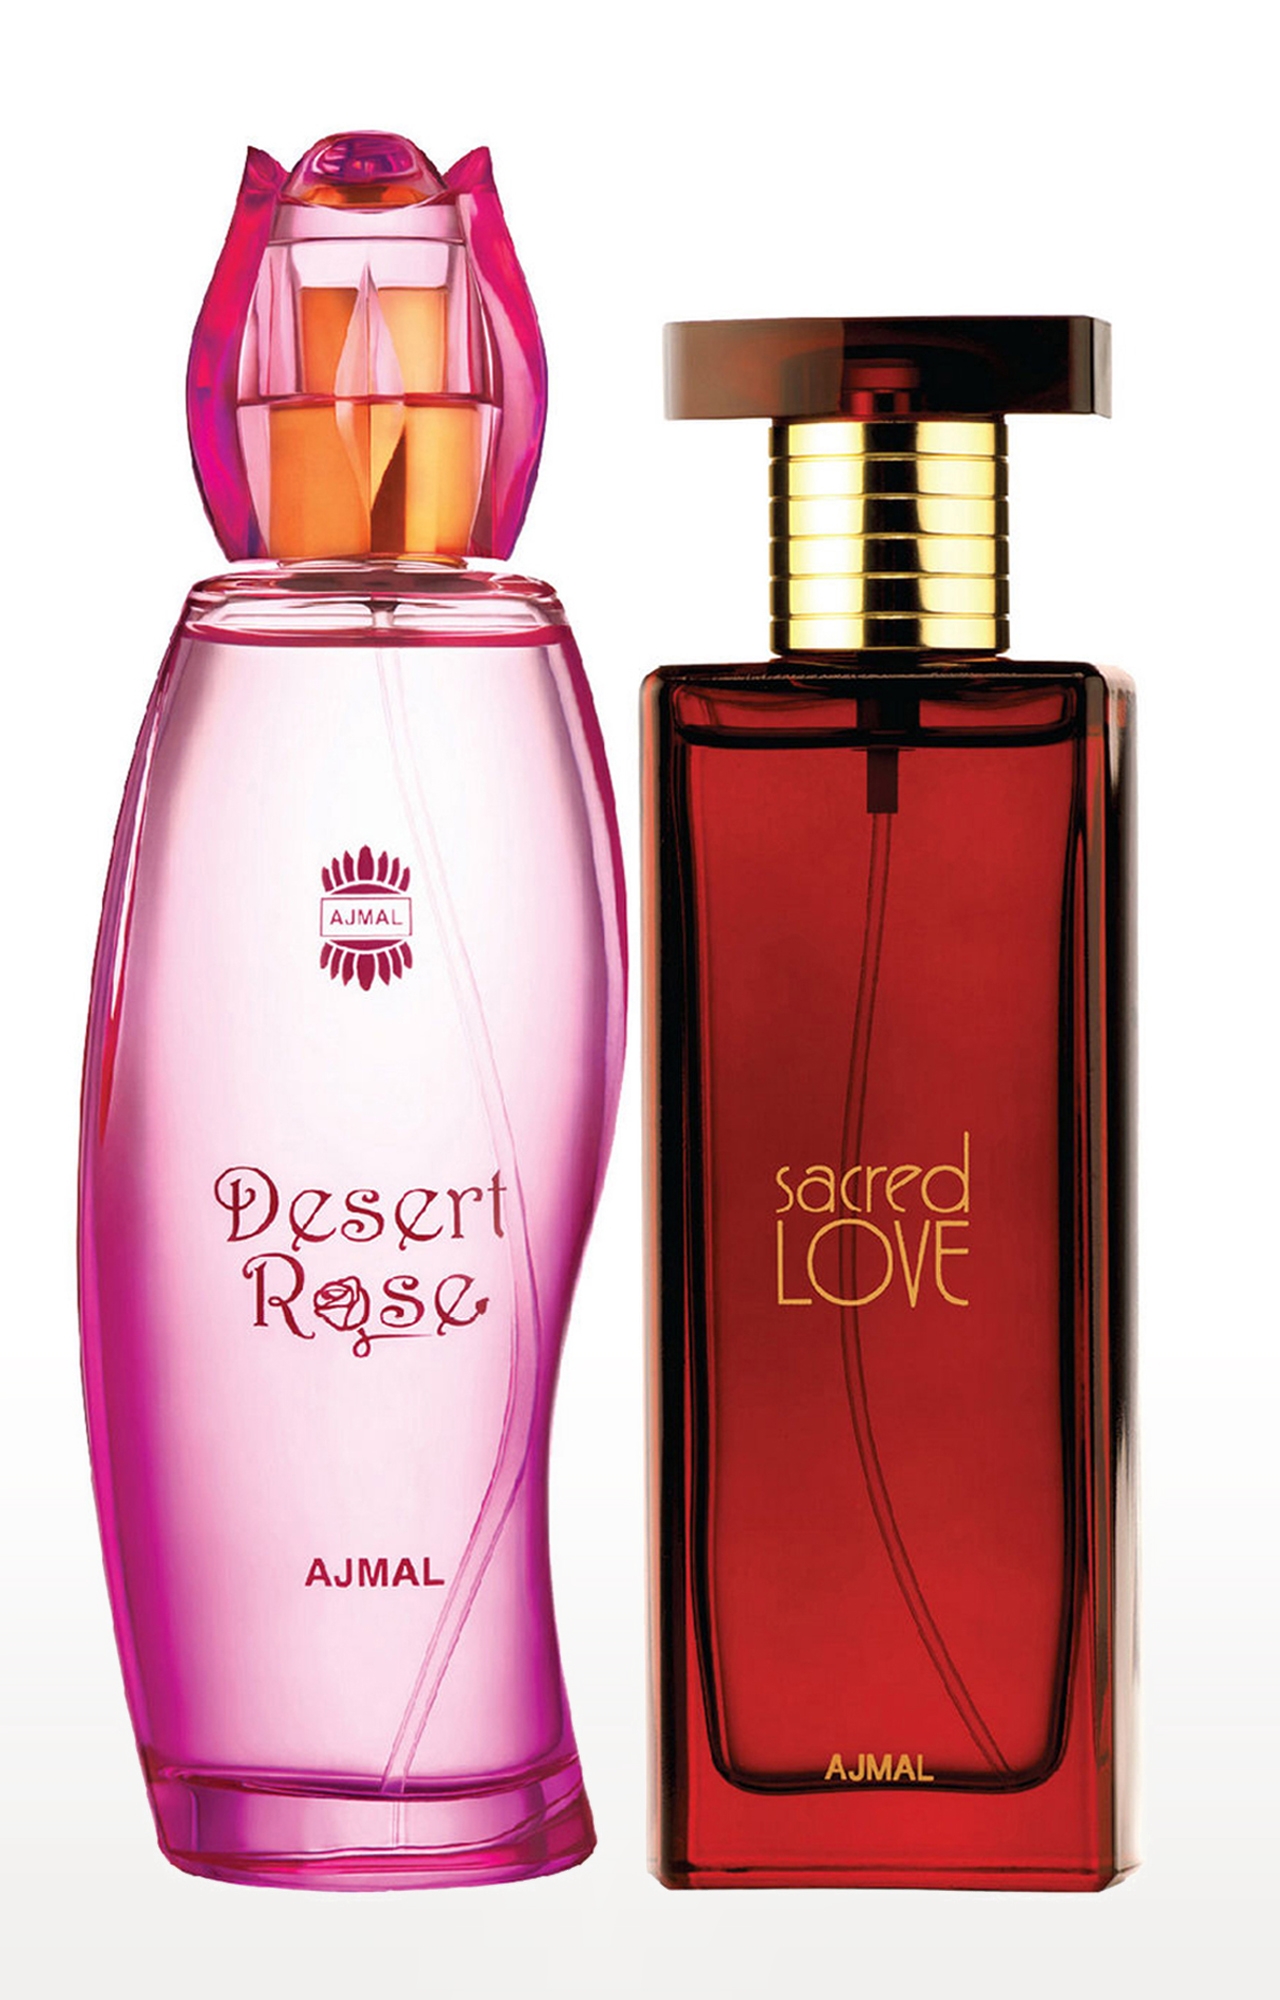 Ajmal Desert Rose EDP Oriental Perfume 100ml for Women and Sacred Love EDP Musky Perfume 50ml for Women